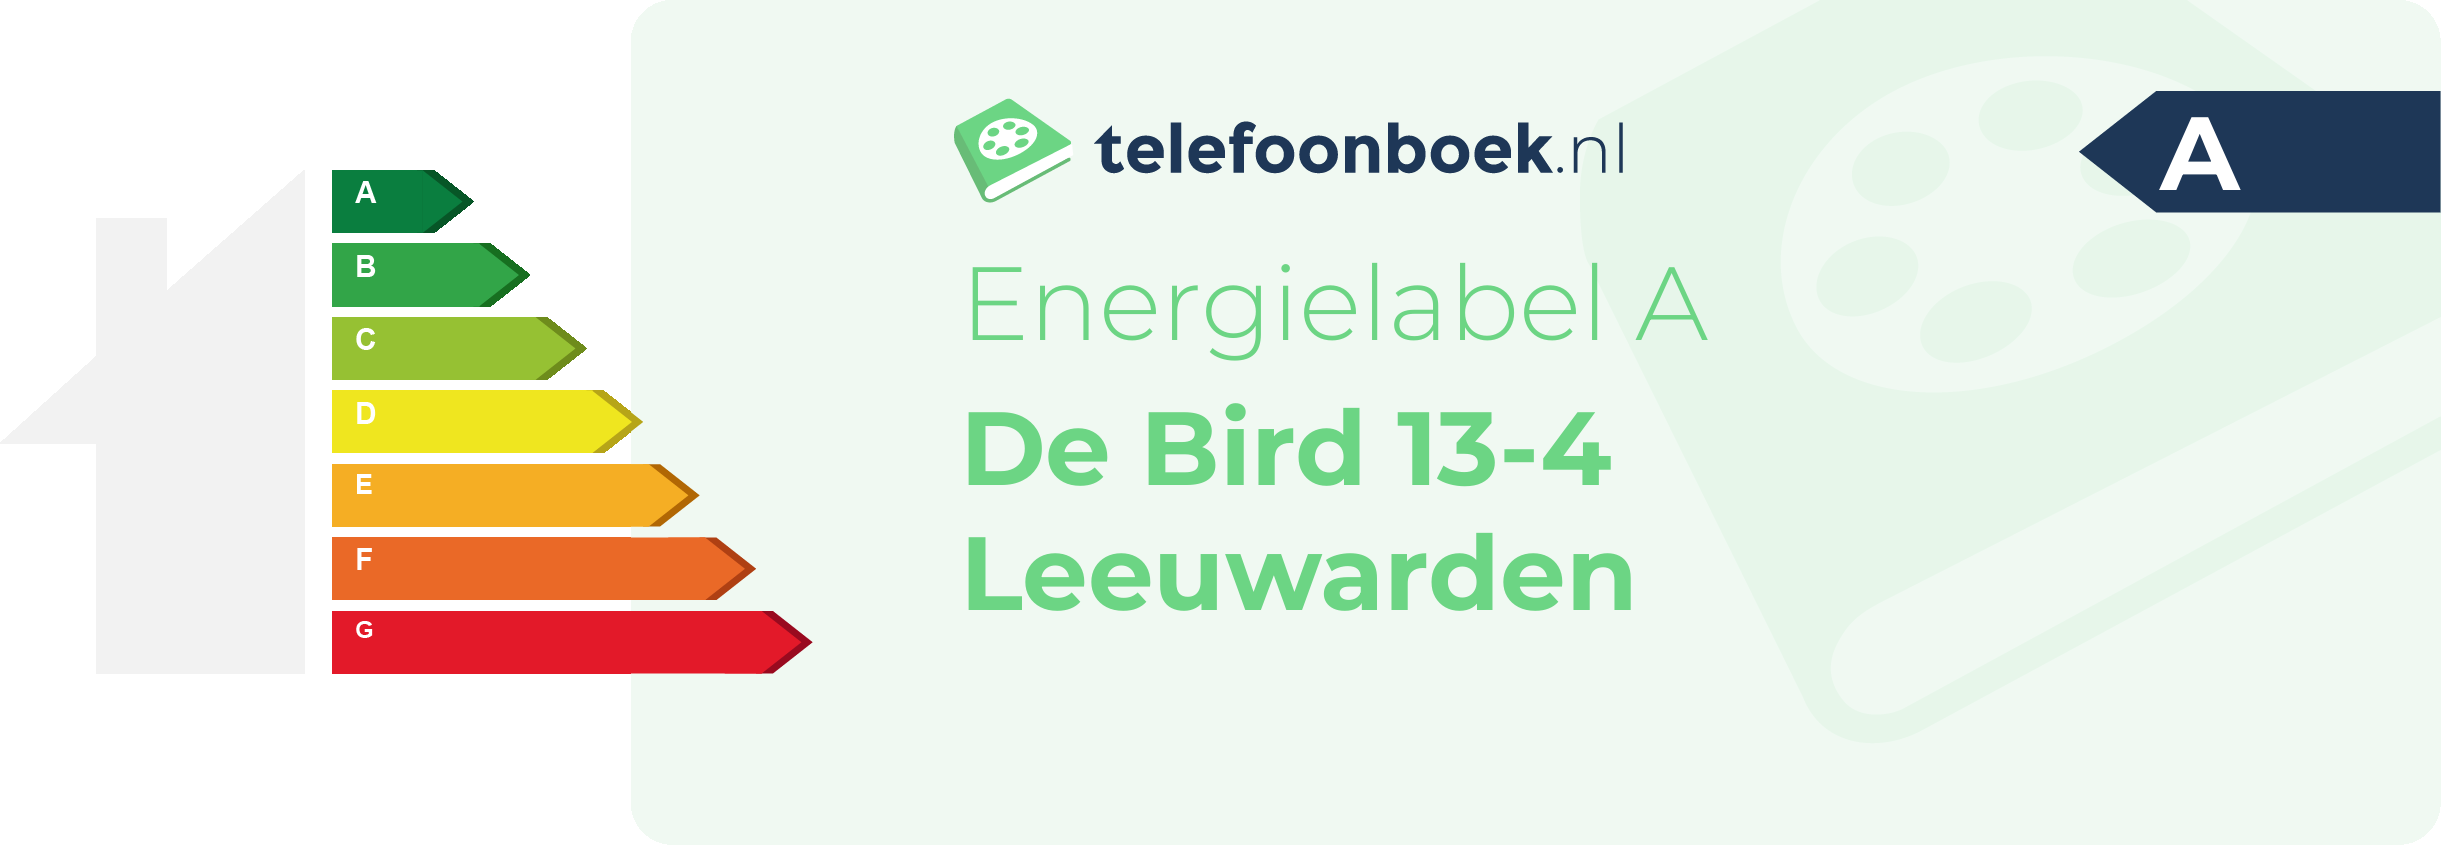 Energielabel De Bird 13-4 Leeuwarden